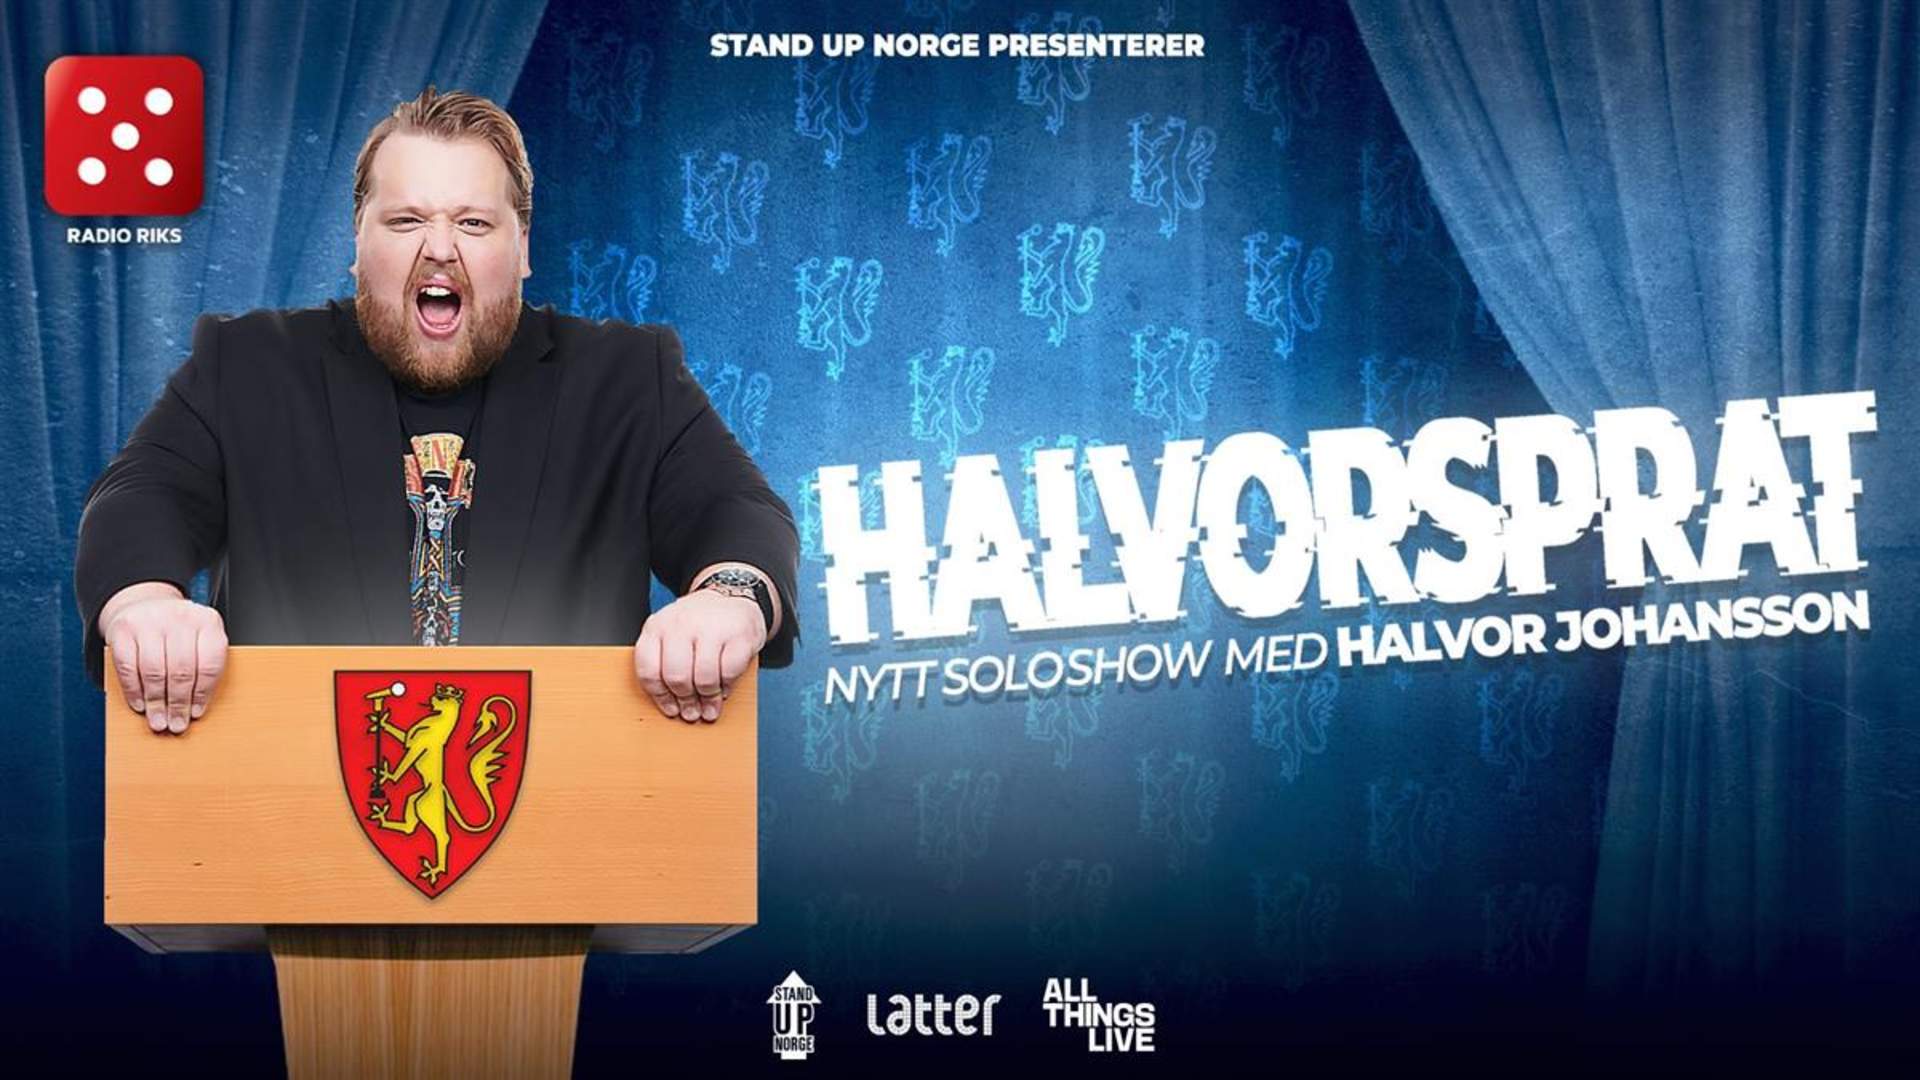 Halvor Johansson // Halvorsprat